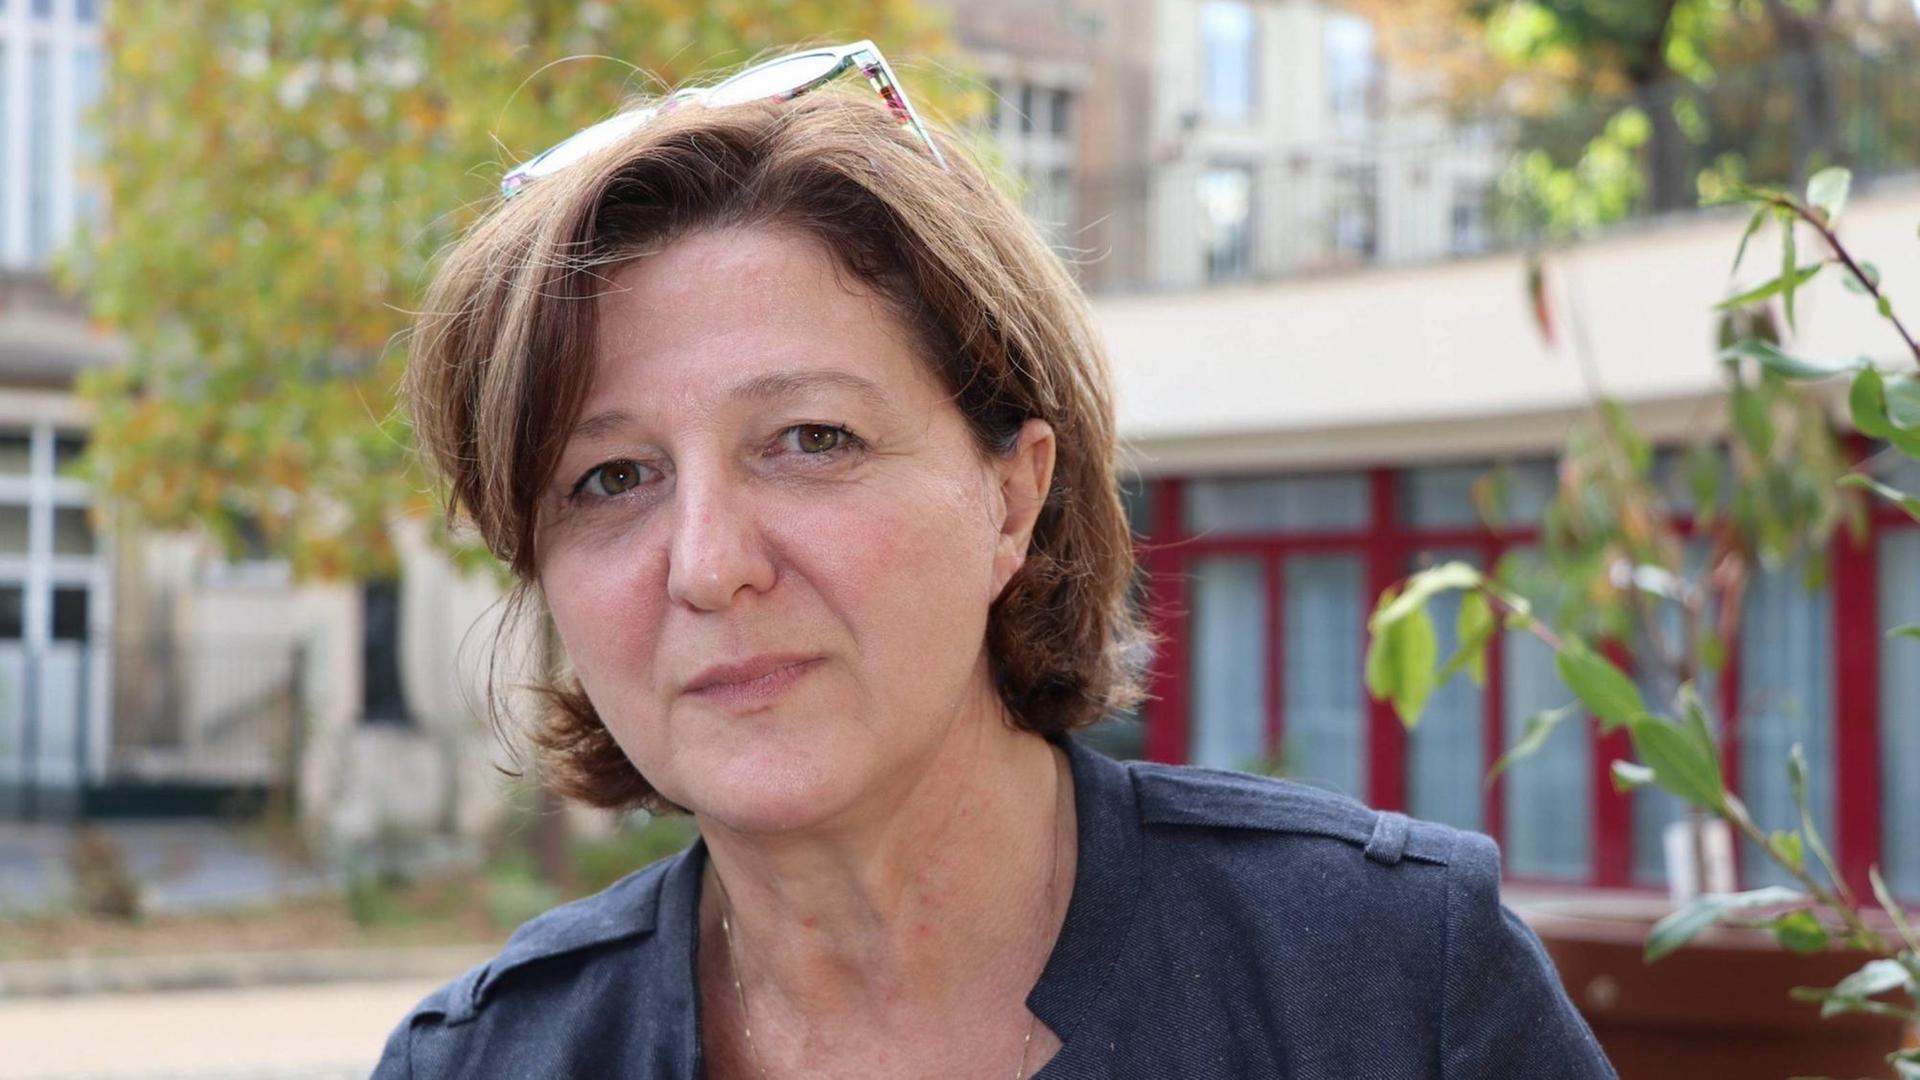 06.10.2018, Frankreich: Emmanuelle Amar, Leiterin der regionalen Register für vorgeburtliche Fehlbildungen, kurz Remera genannt, in Lyon